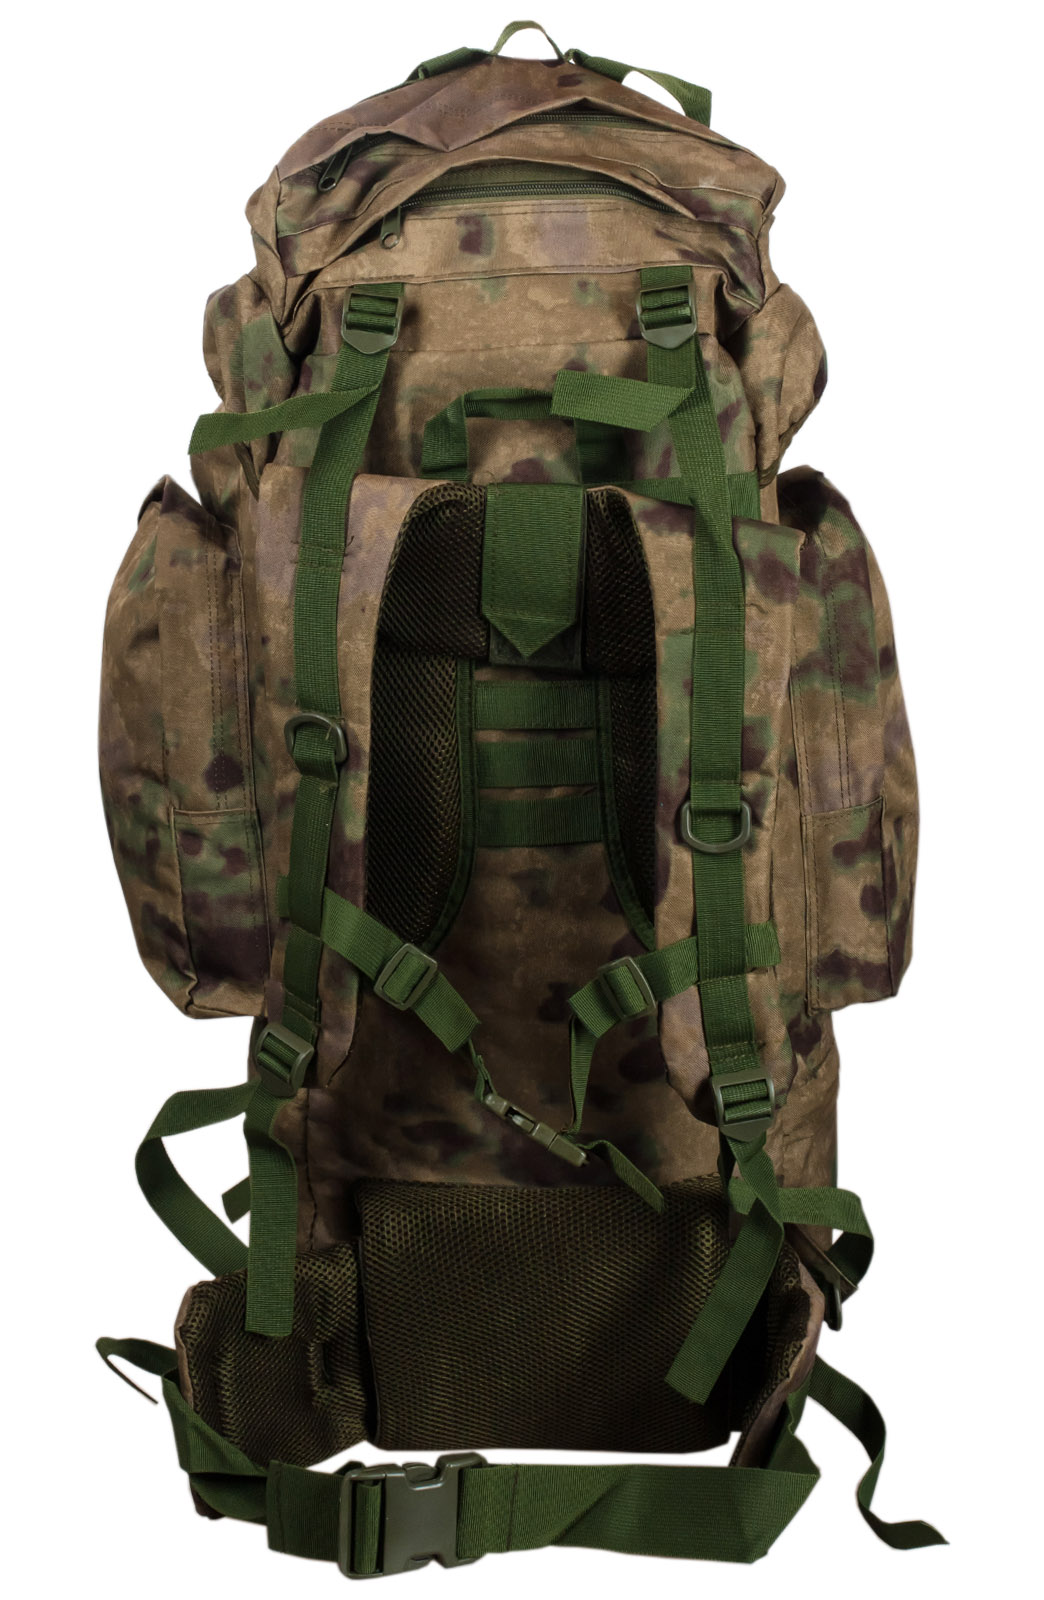 Купить тактический камуфляжный рюкзак с нашивкой Афган оптом или в розницу